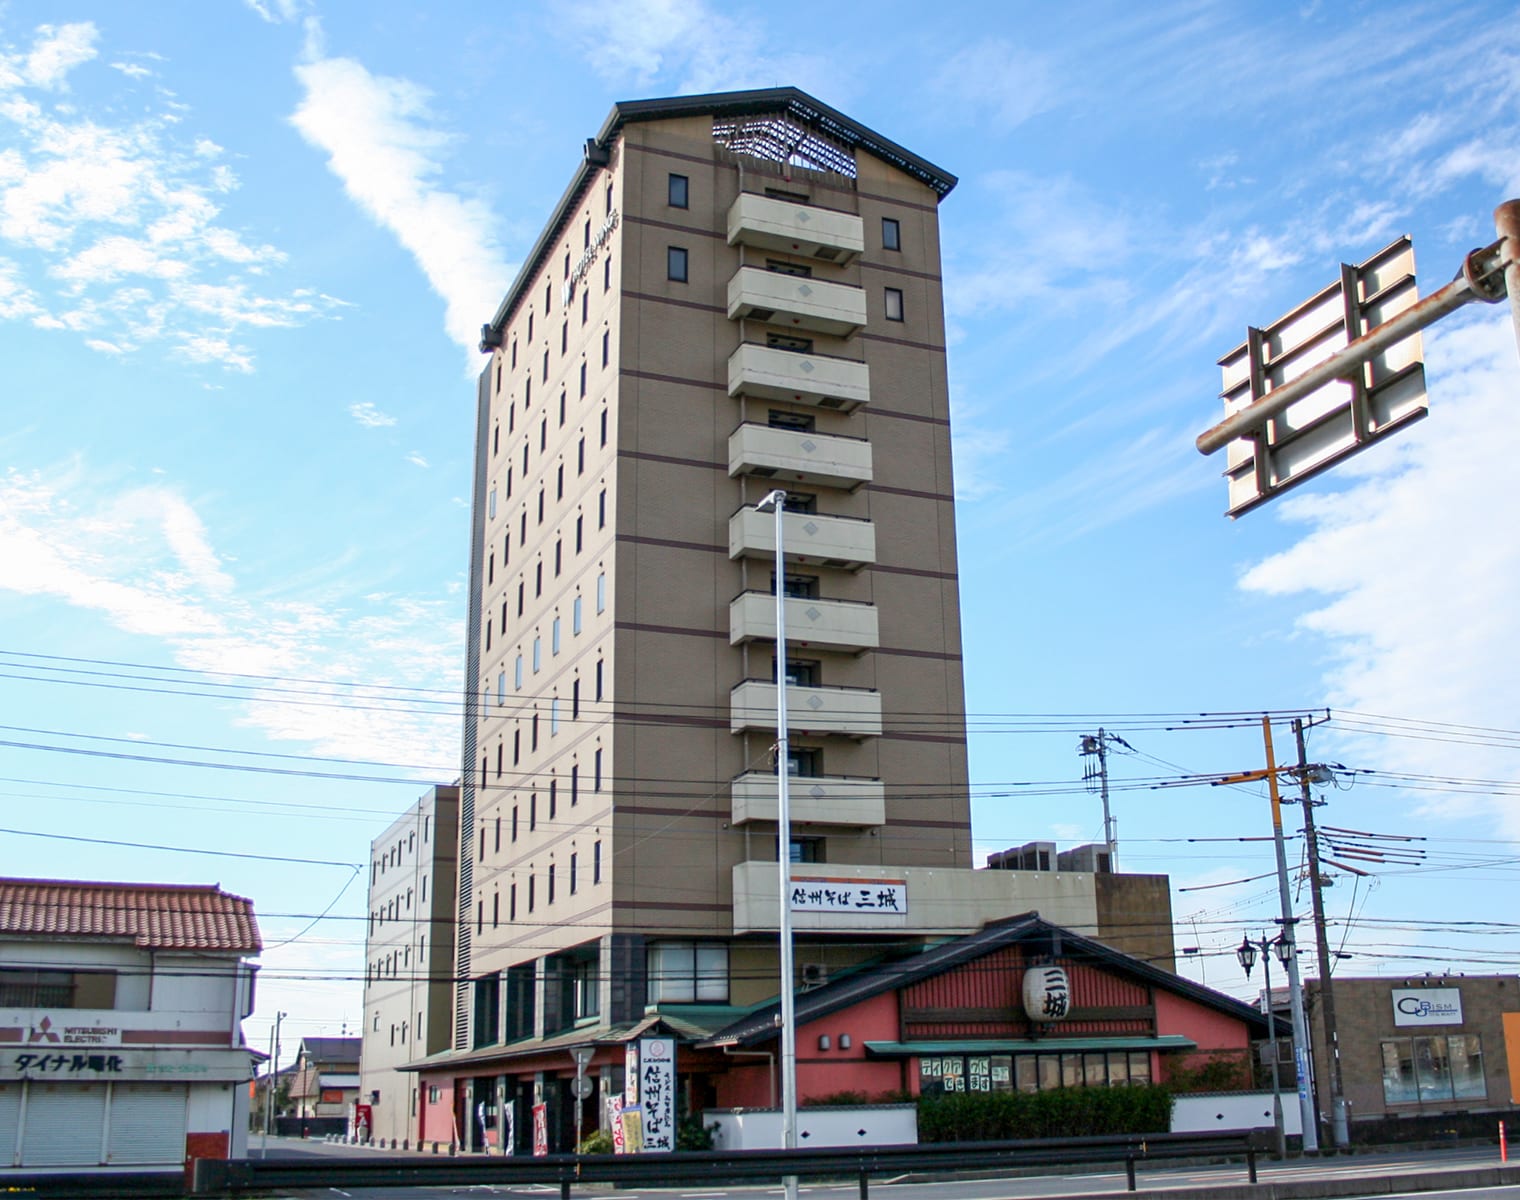 호텔 윙 인터내셔널 가시마